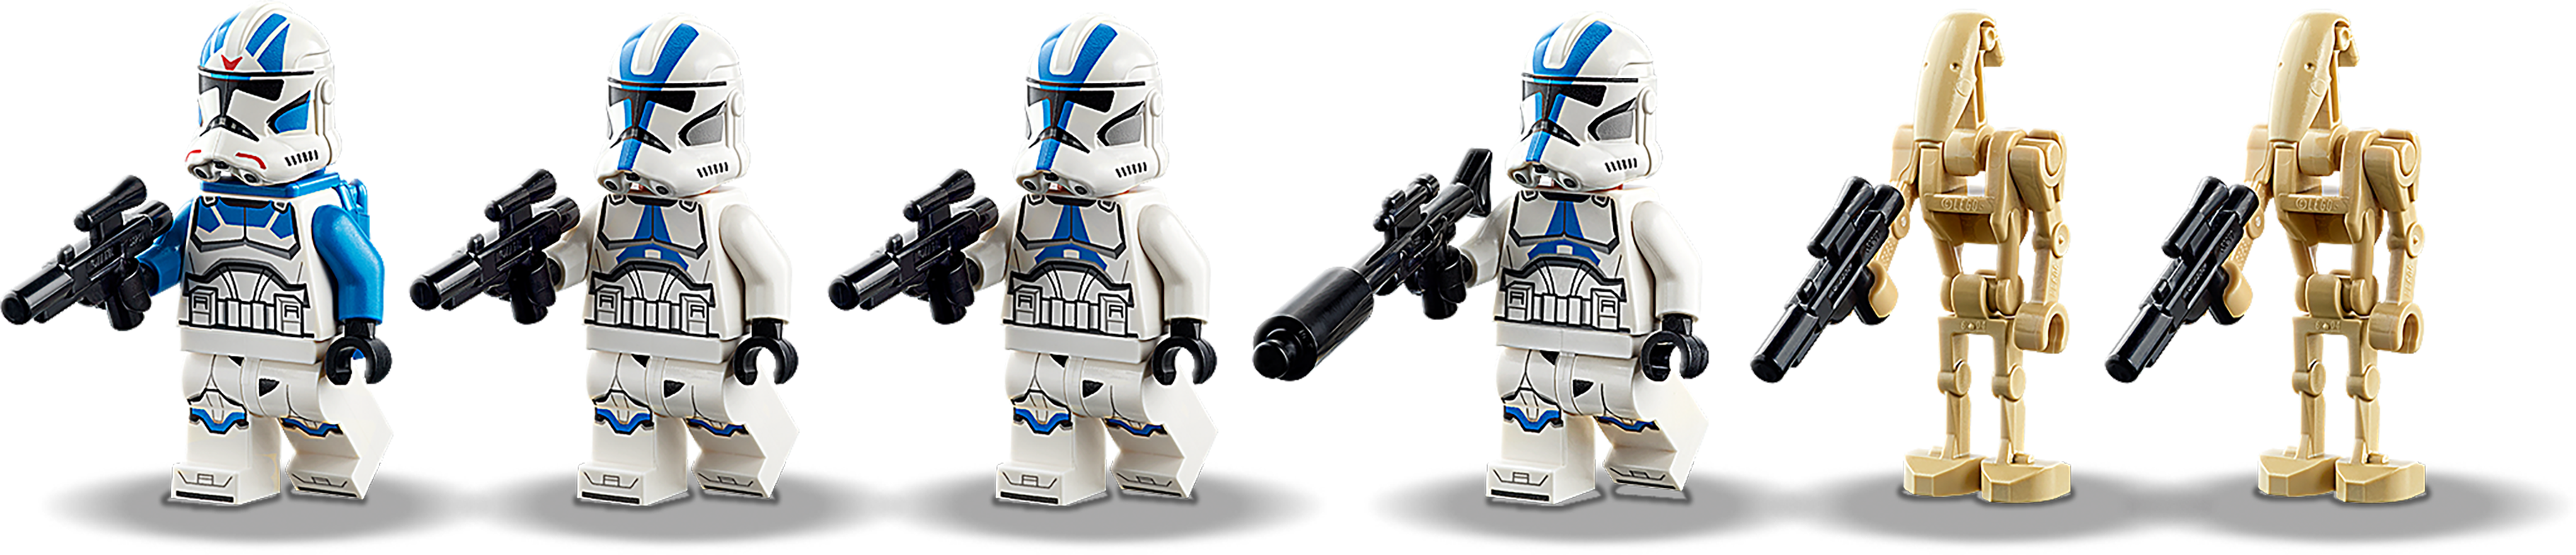 +OHNE Figuren+ 75280 LEGO Star Wars Clone Troopers der 501 Legion NEU 